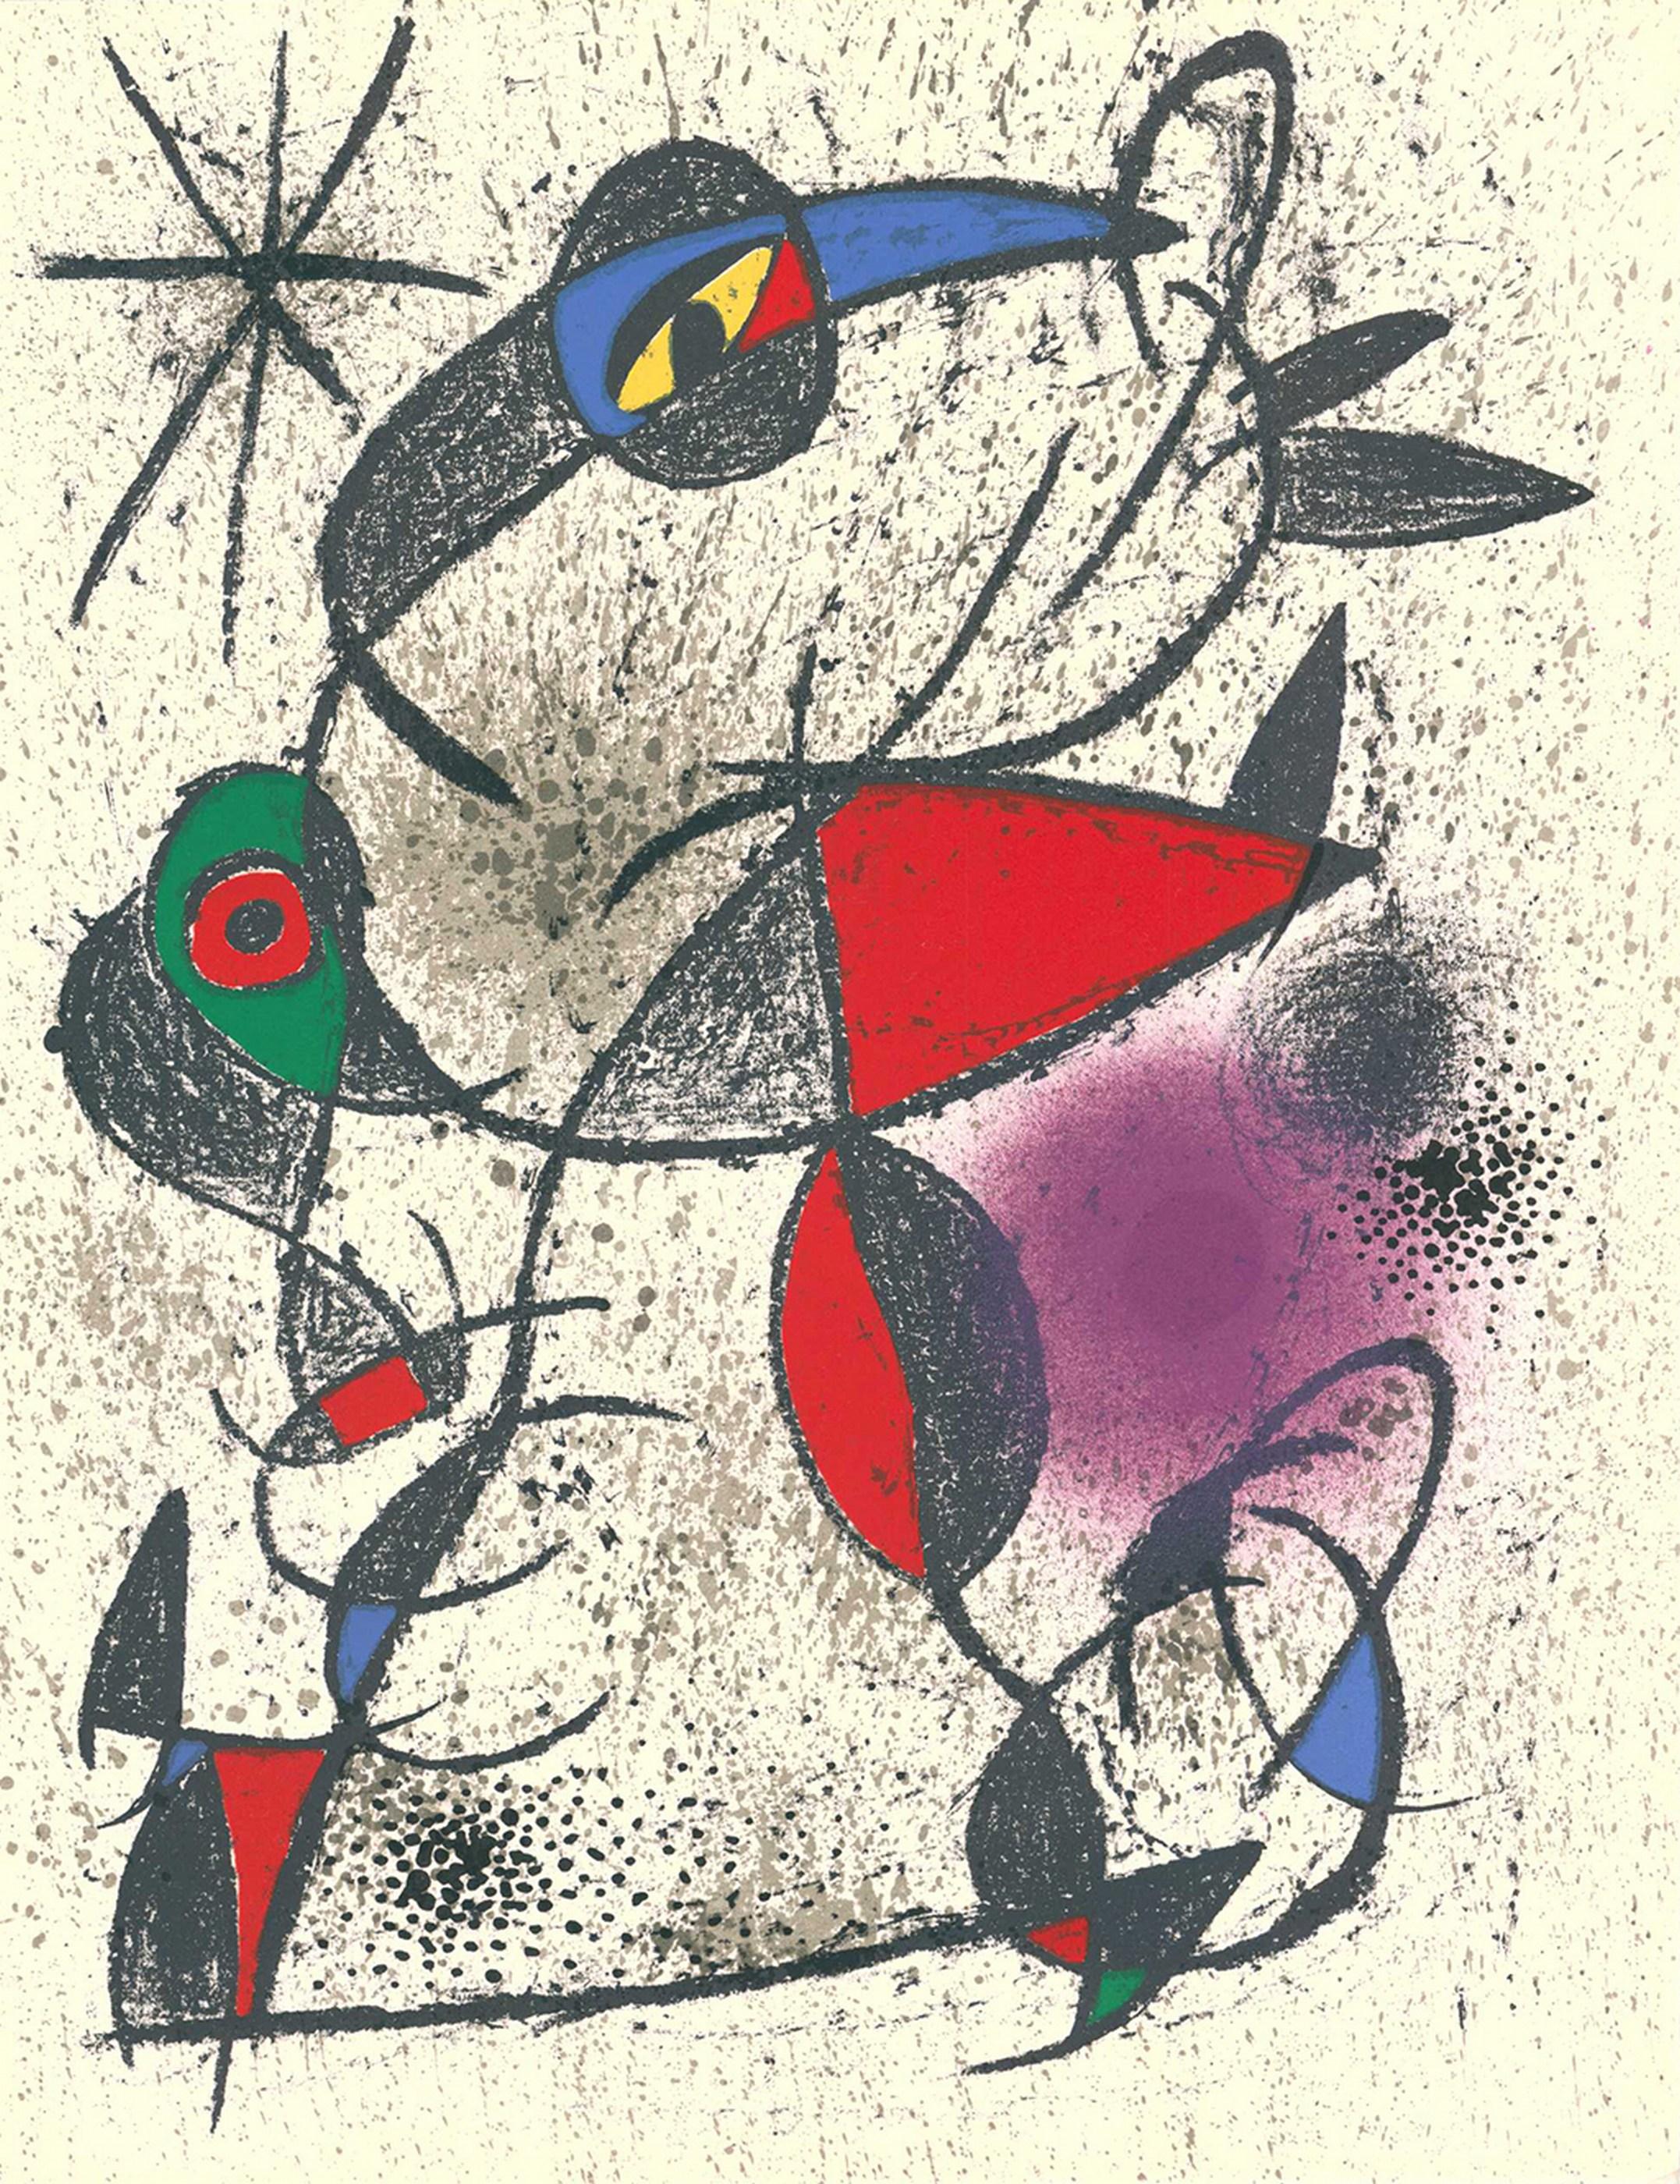 Joan Miró Abstract Print - Jaillie du calcaire (from "Souvenirs et portraits d'artistes")